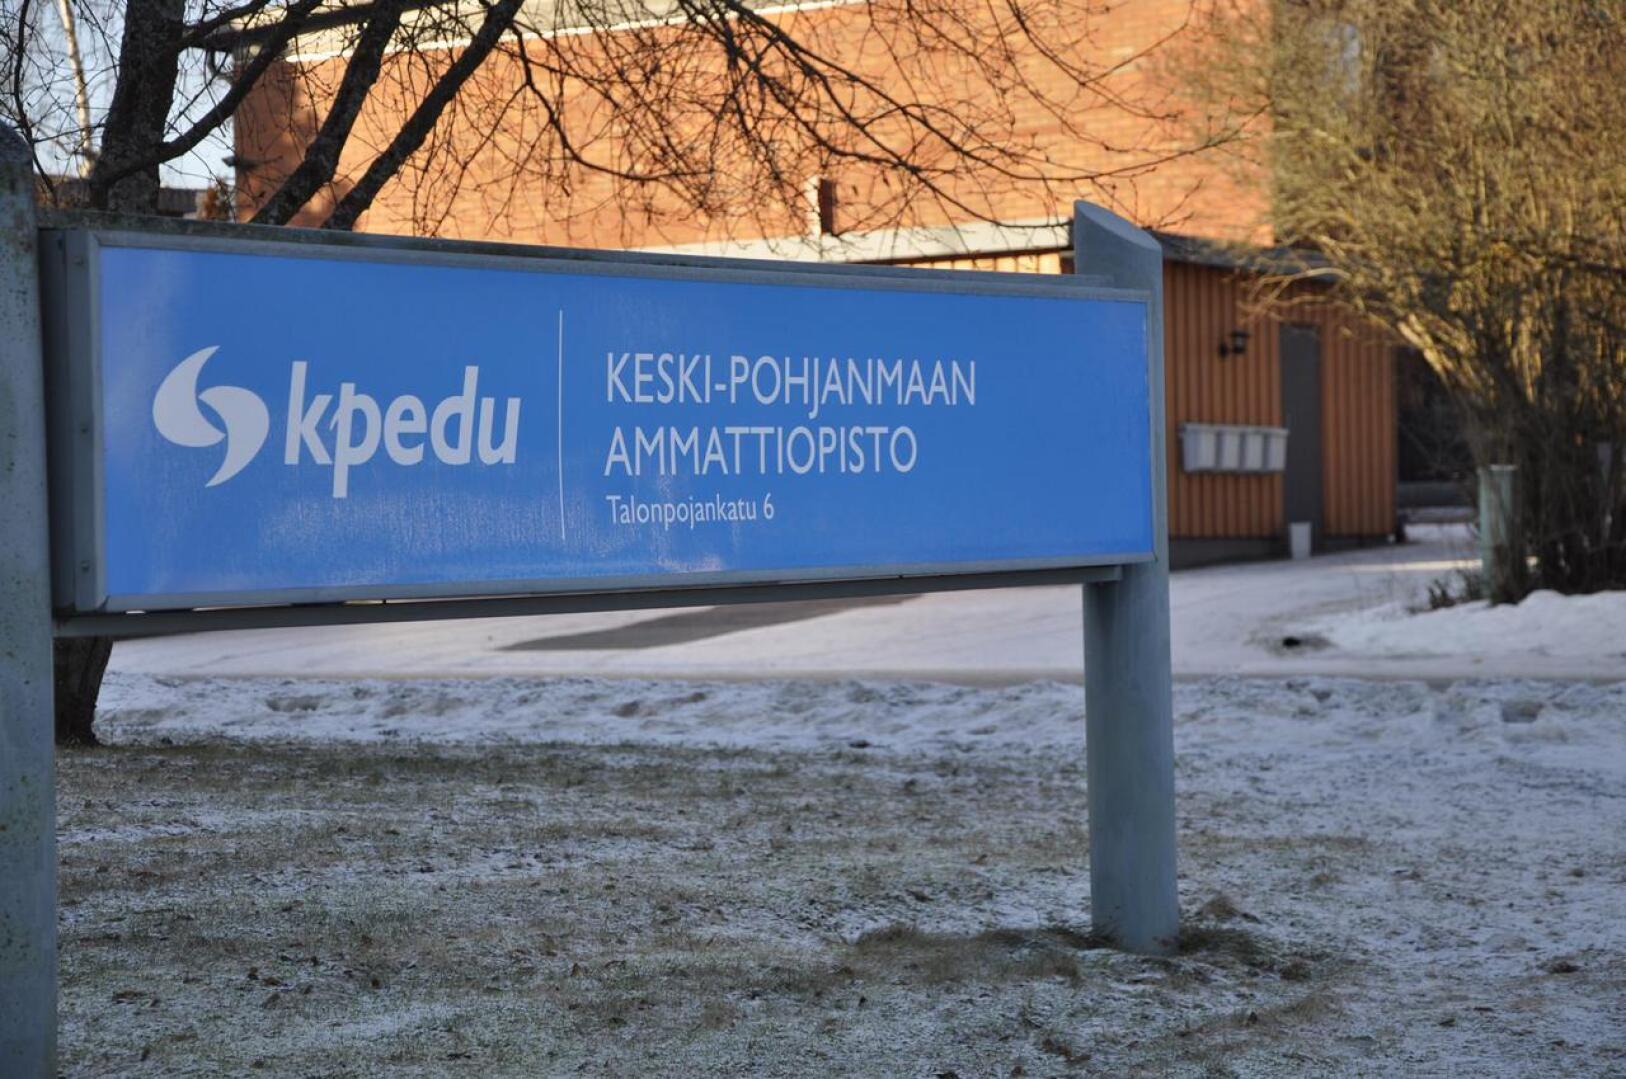 Kpedu tarjoaa ammatillista peruskoulutusta nuorille ja aikuisille Keski-Pohjanmaan alueella ammattiopistossa sekä kansanopistossa.. 